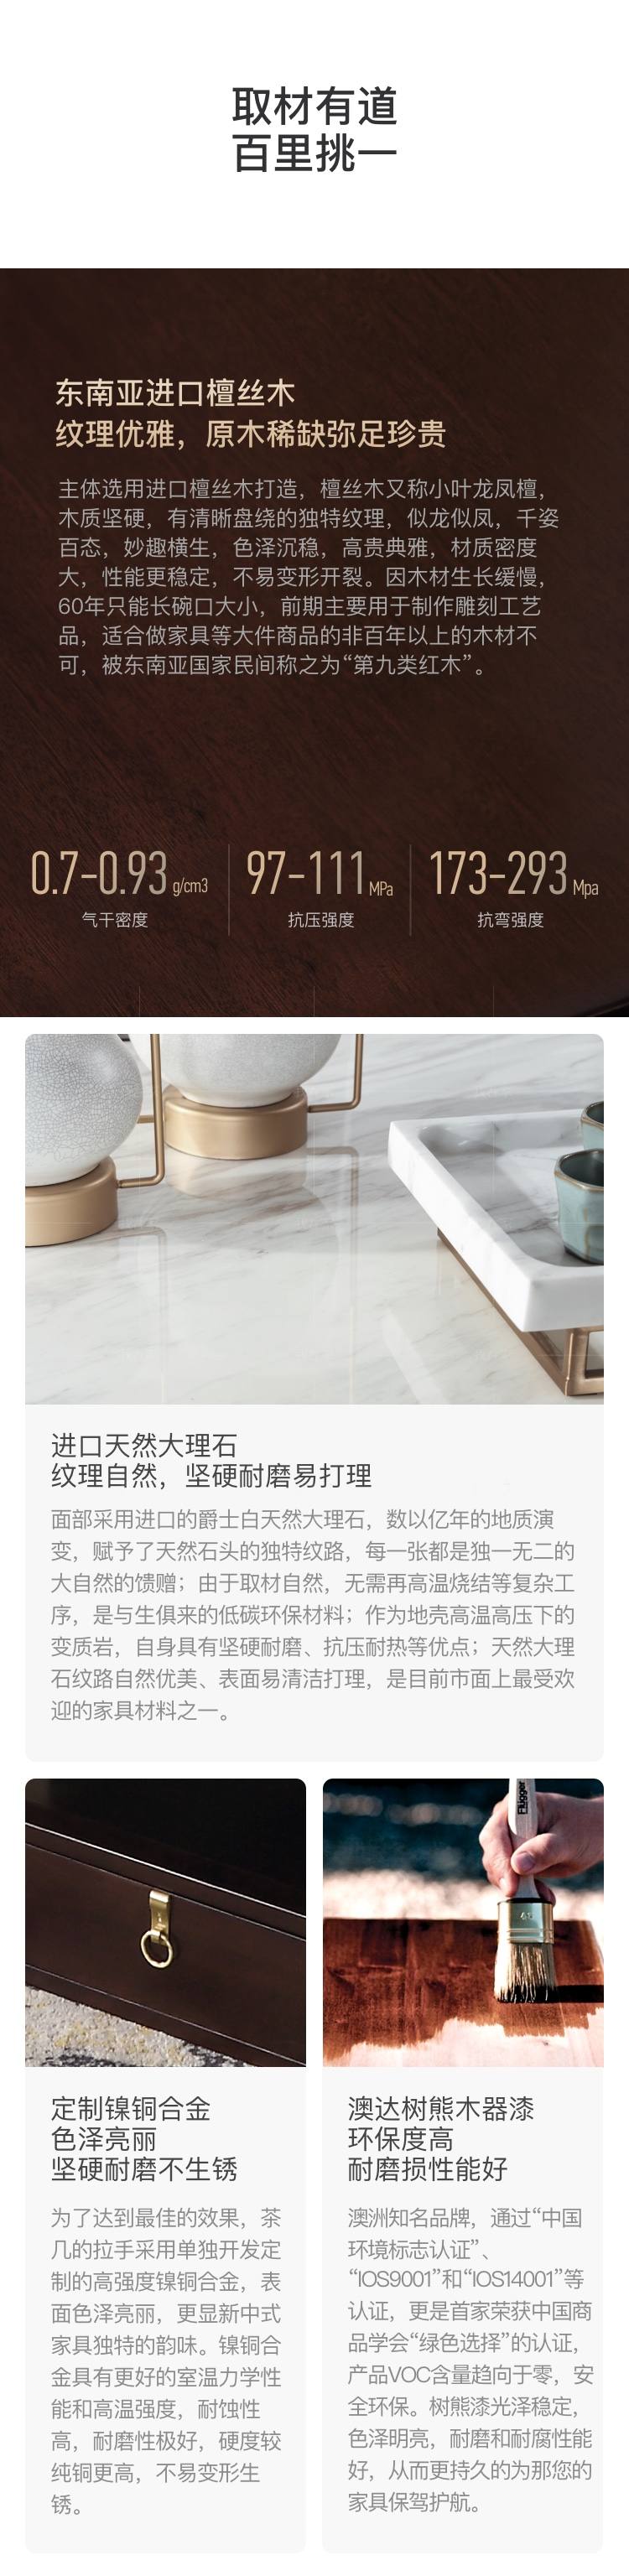 新中式风格似锦茶几的家具详细介绍